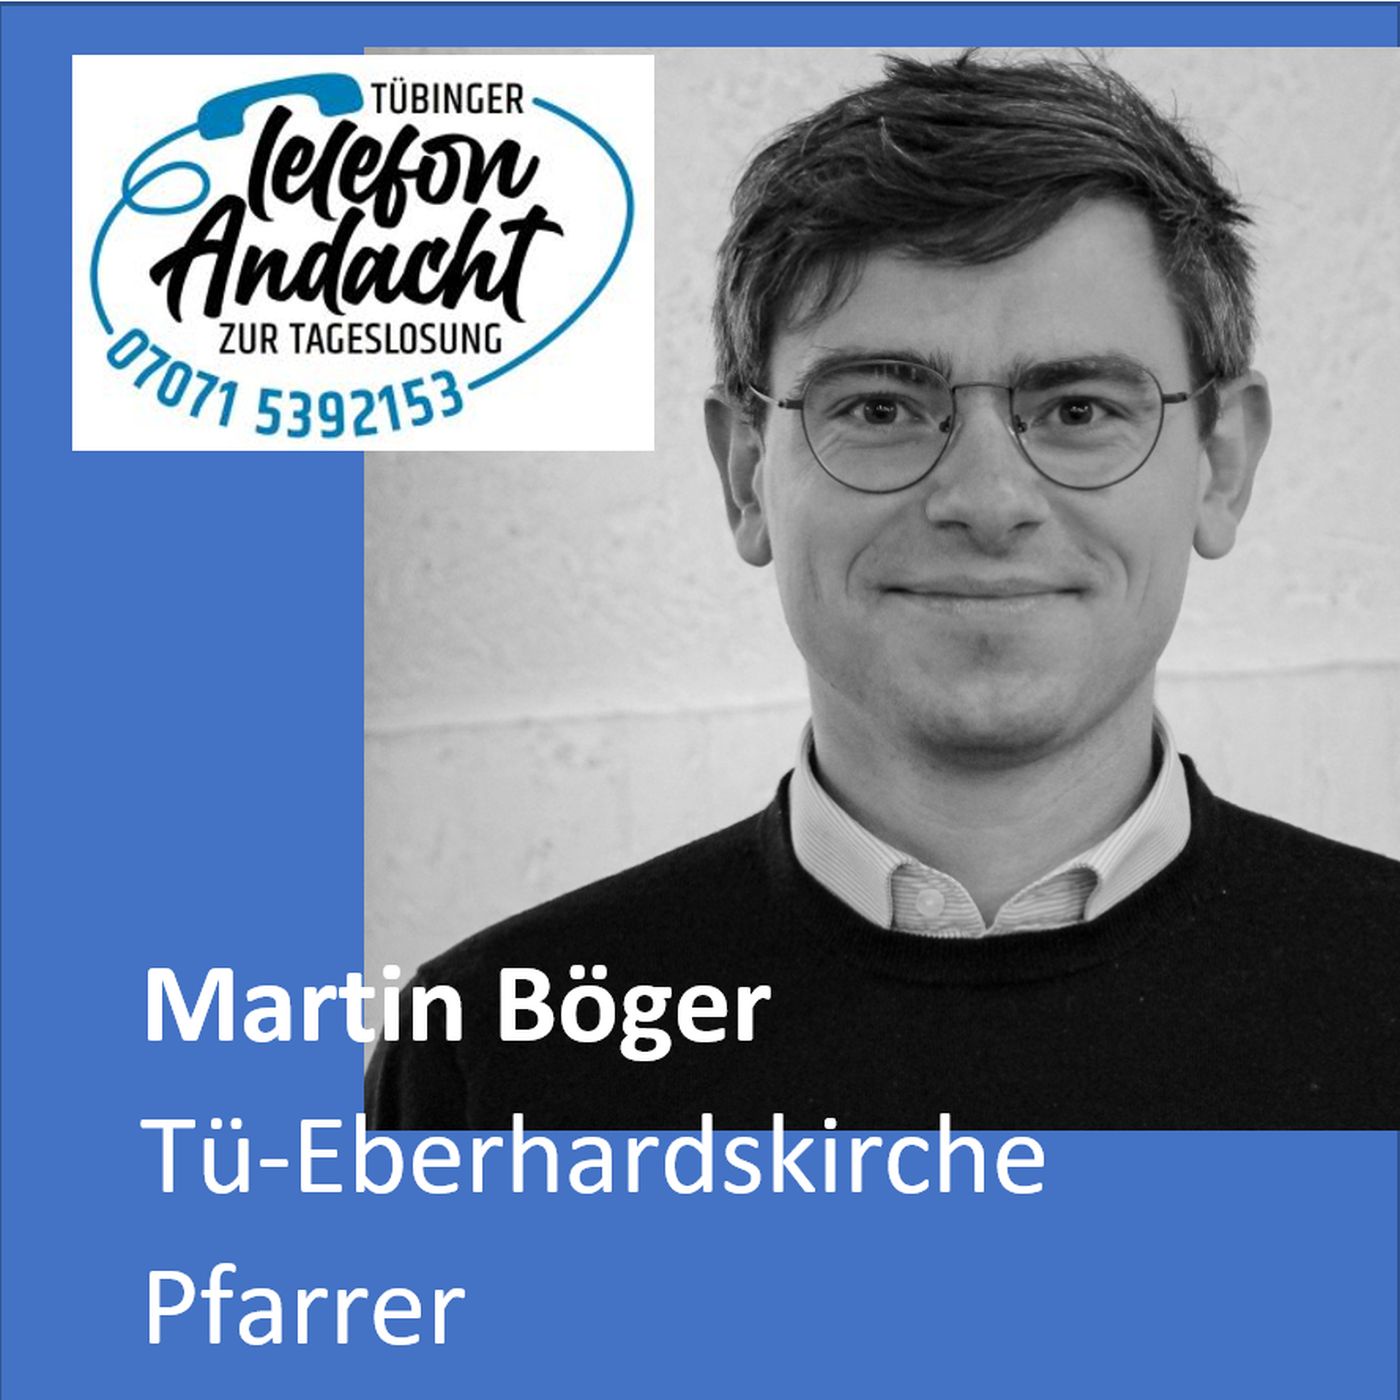 24 04 11 Martin Böger